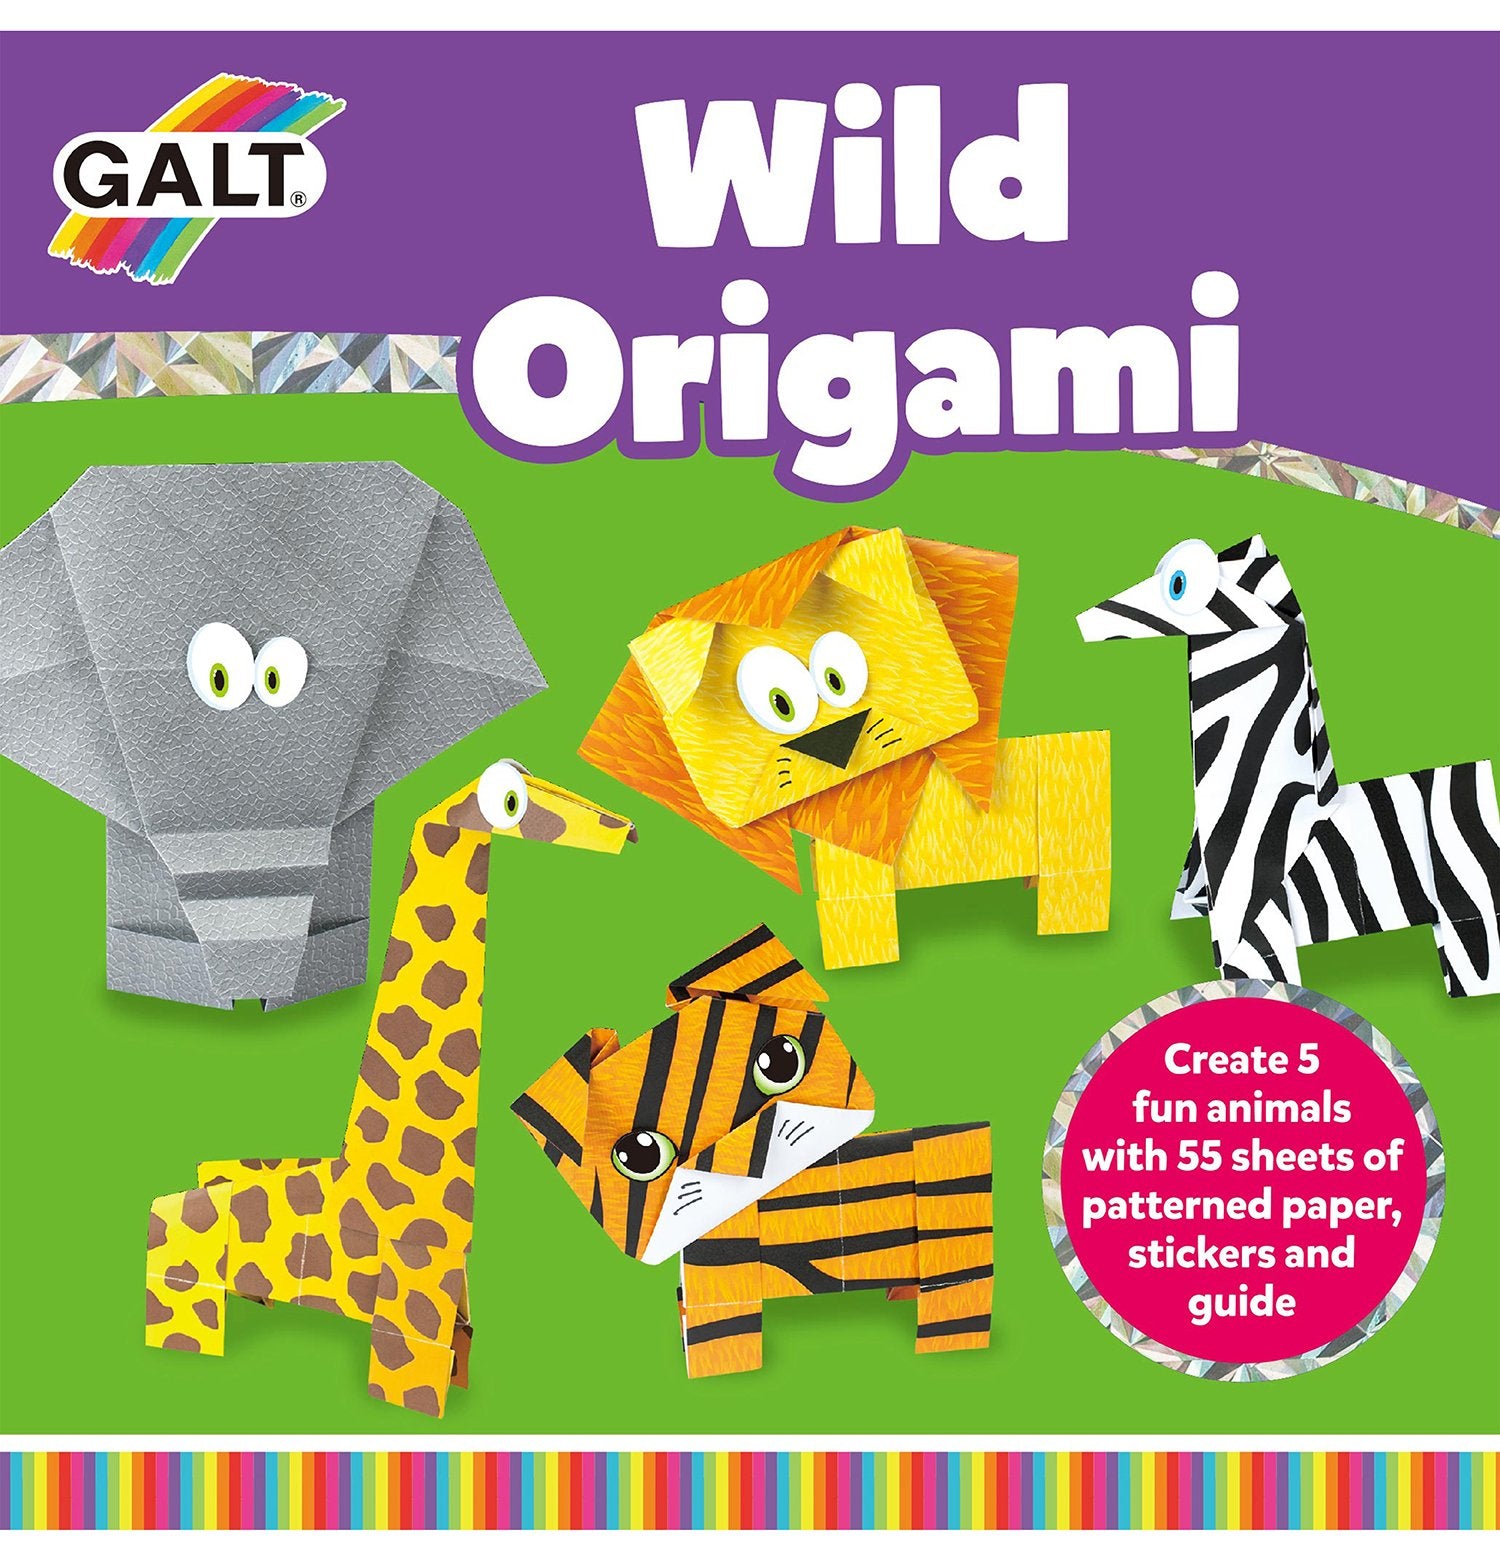 Wild Origami - Galt